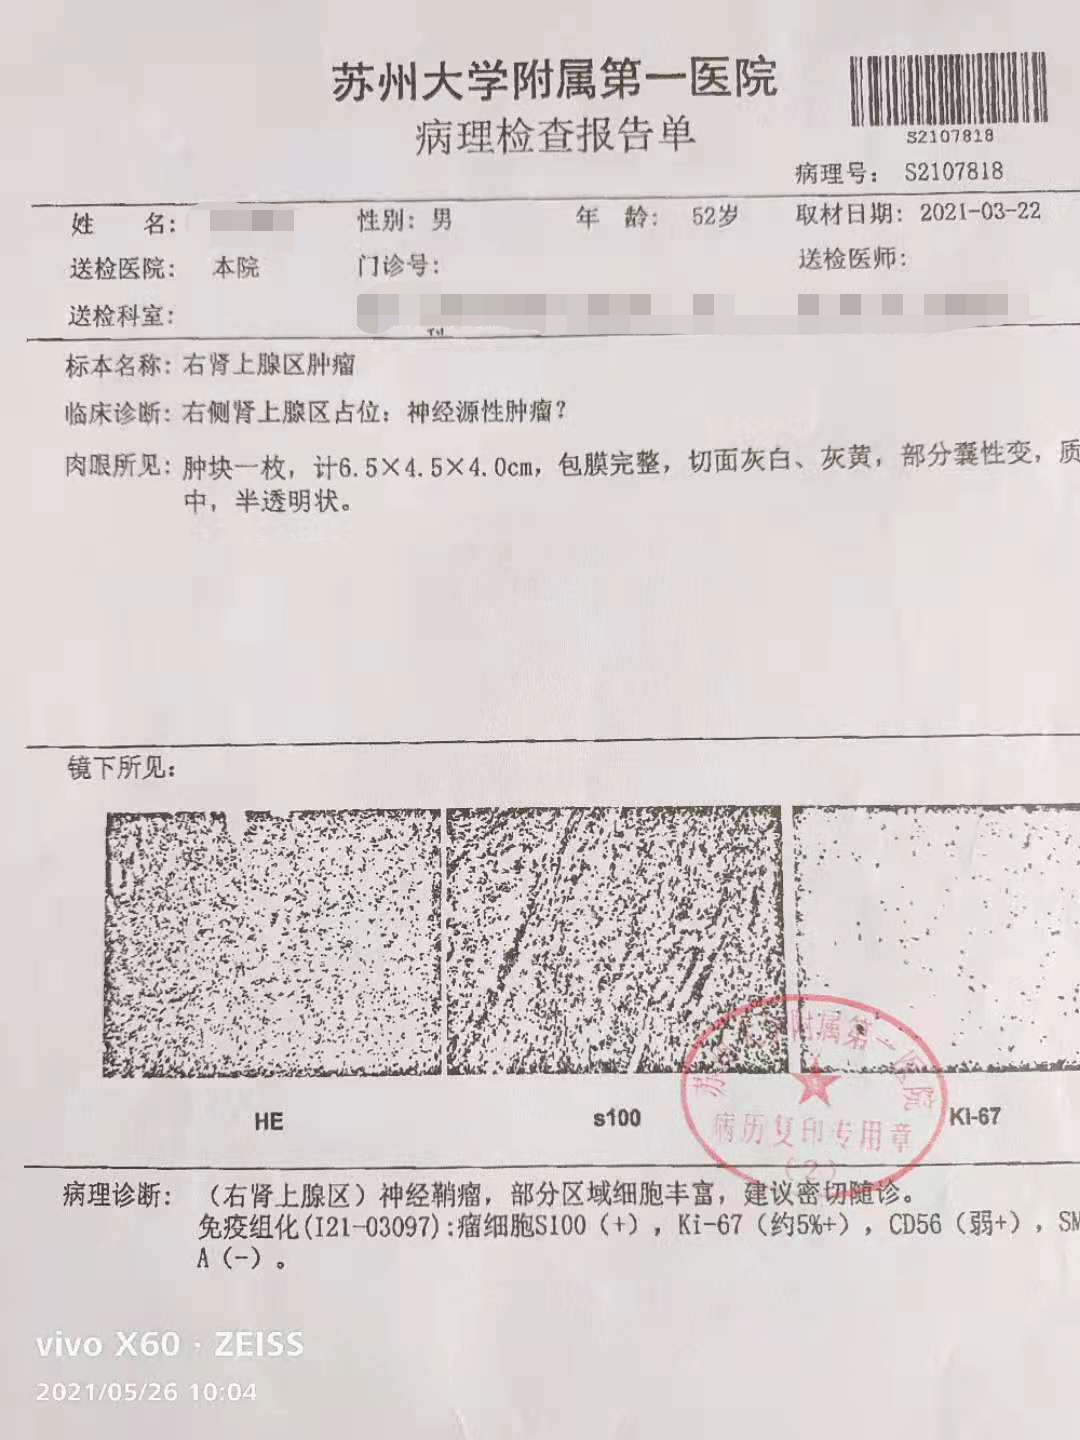 康涛的病例报告  本文图片均由受访者提供